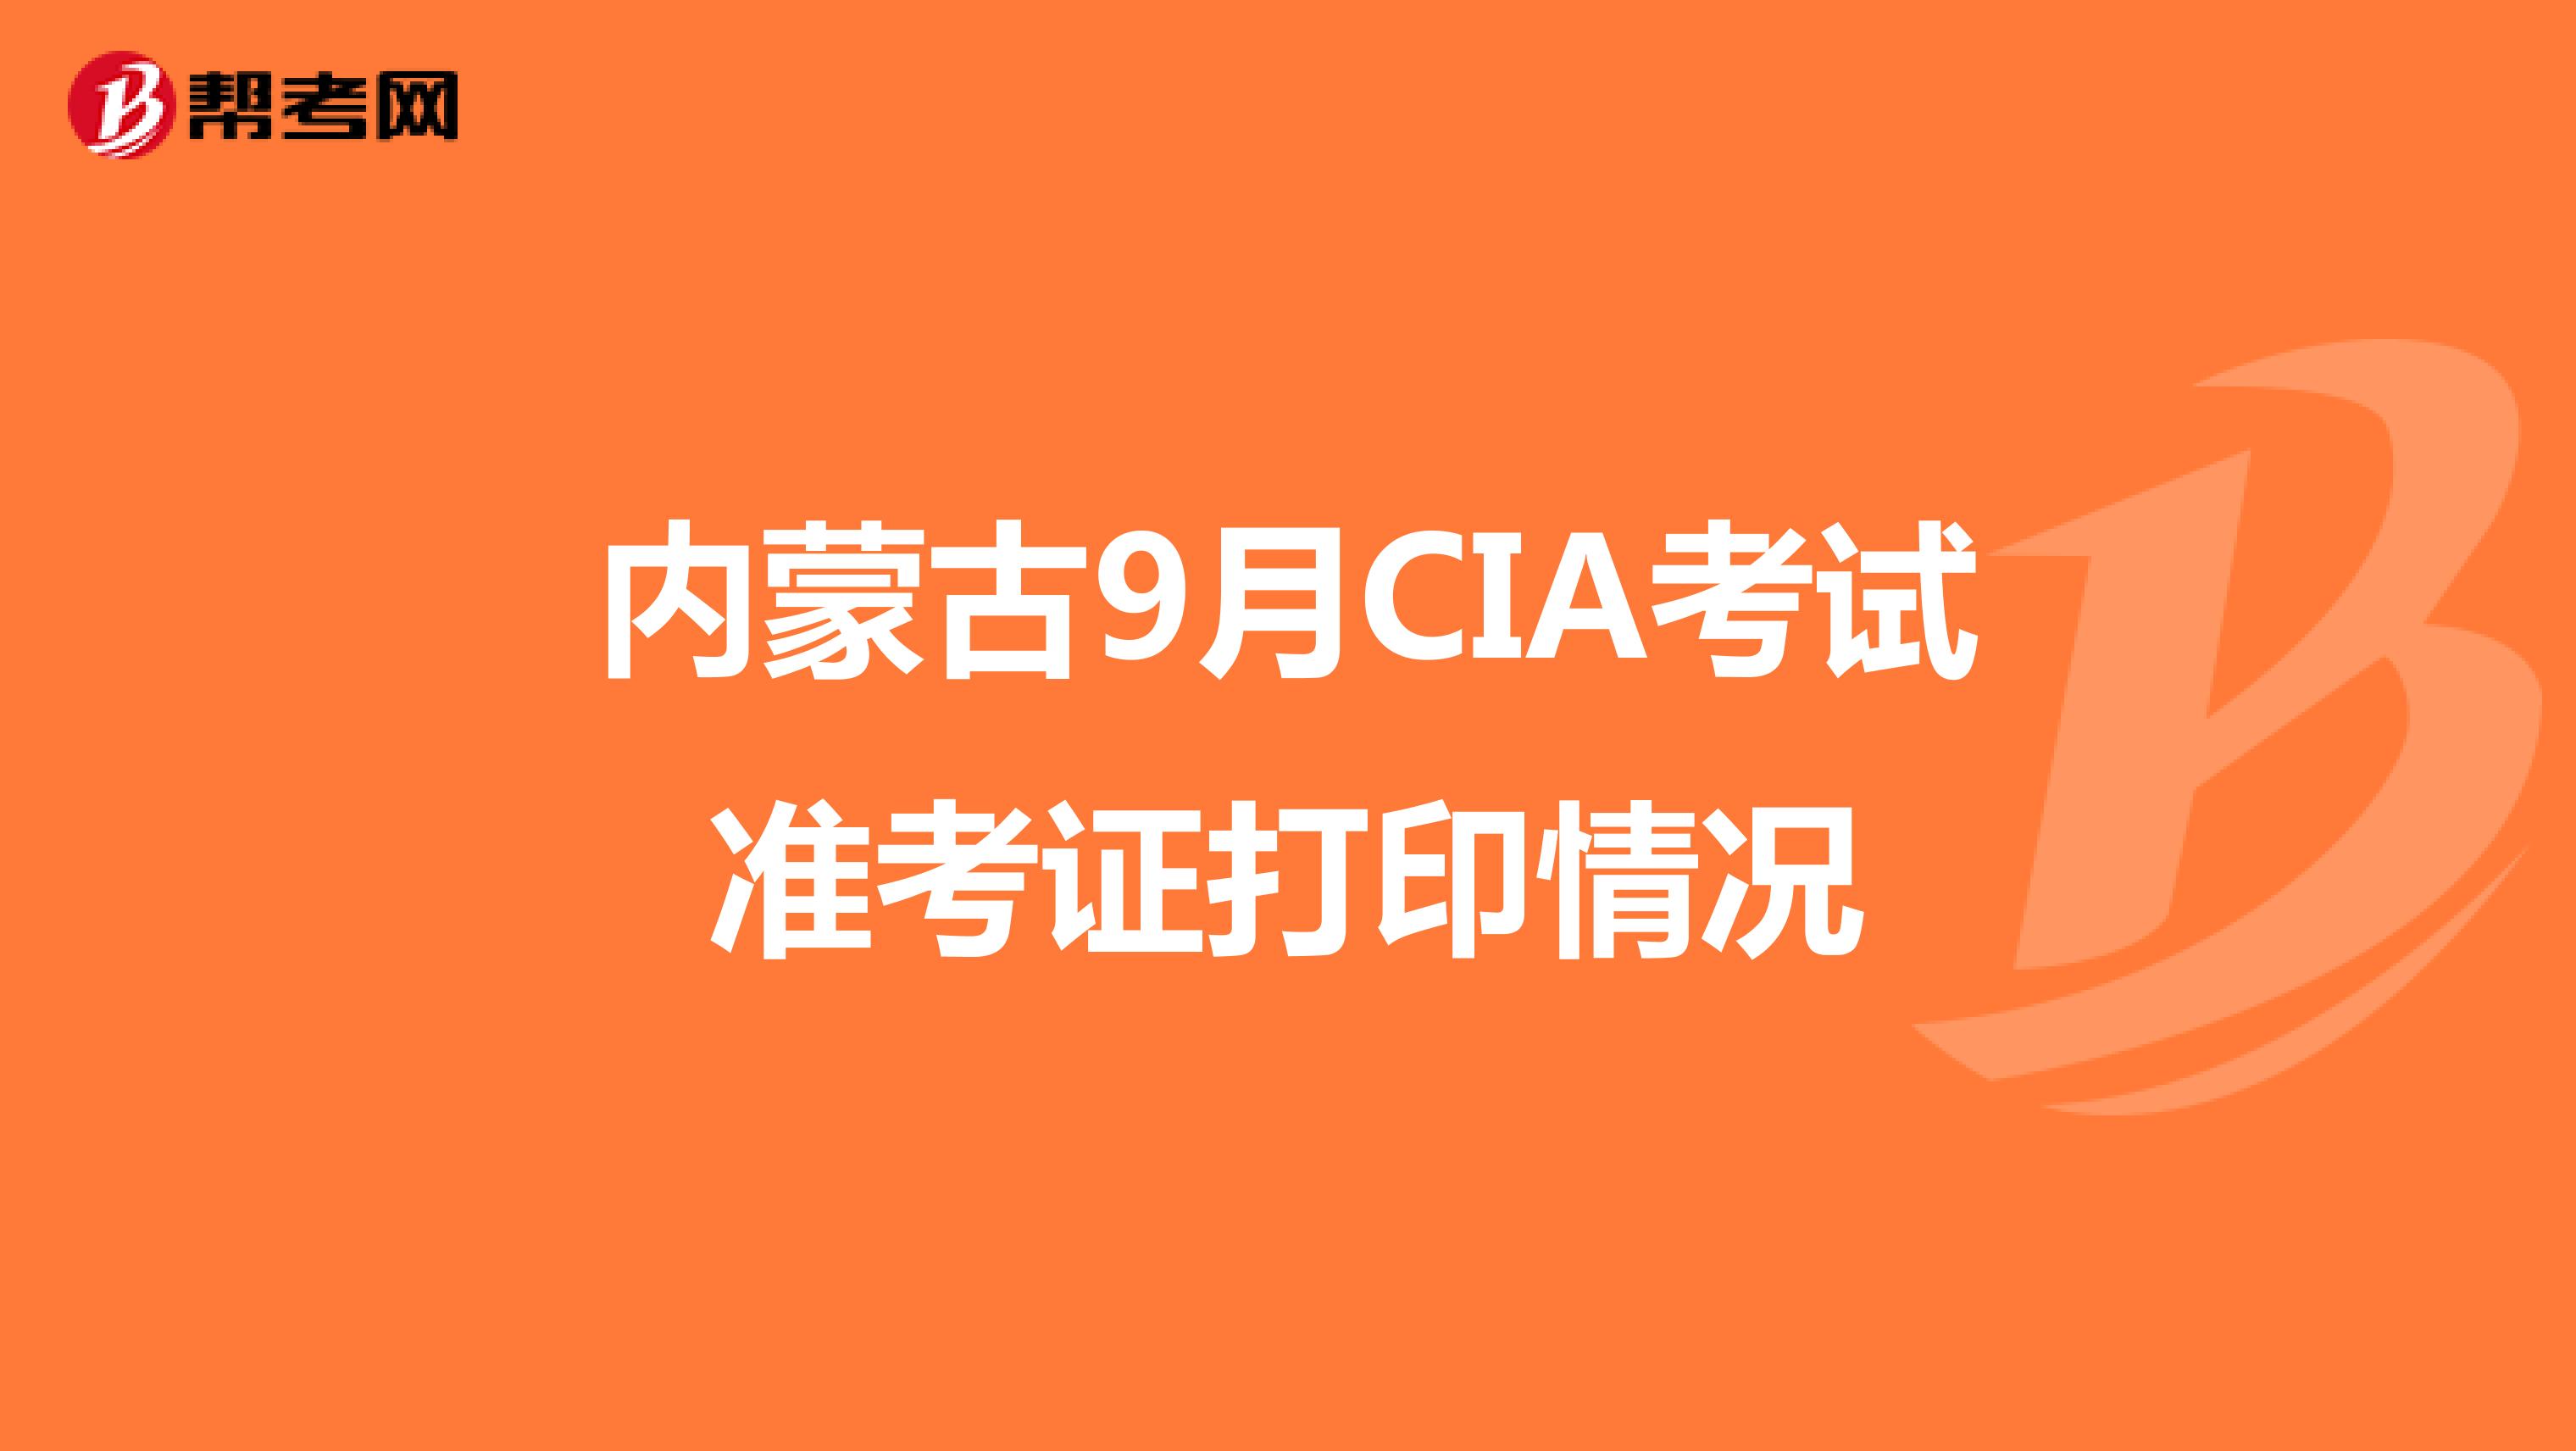 内蒙古9月CIA考试准考证打印情况